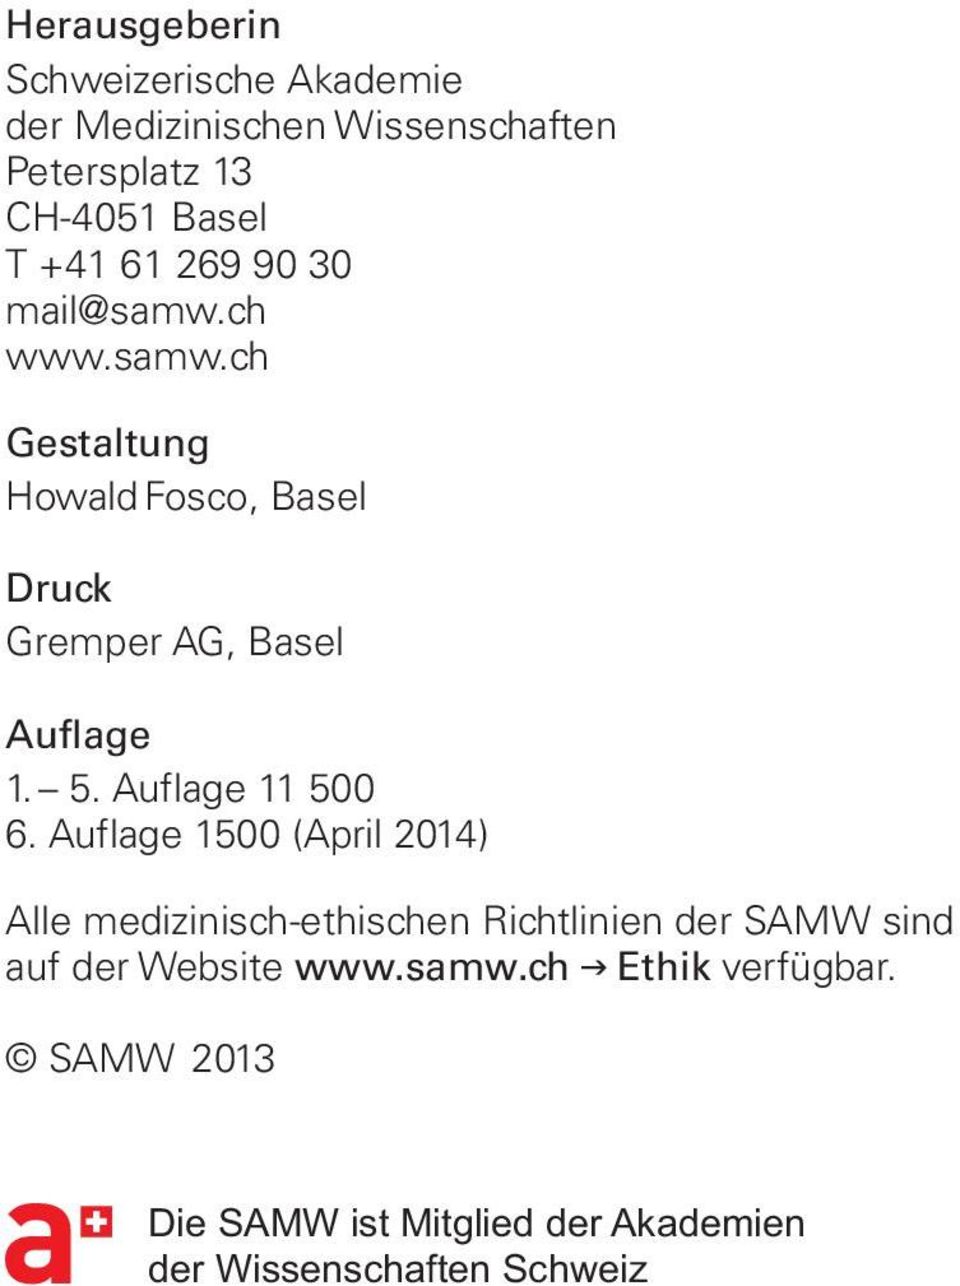 Auflage 1500 (April 2014) Alle medizinisch-ethischen Richtlinien der SAMW sind auf der Website www.samw.